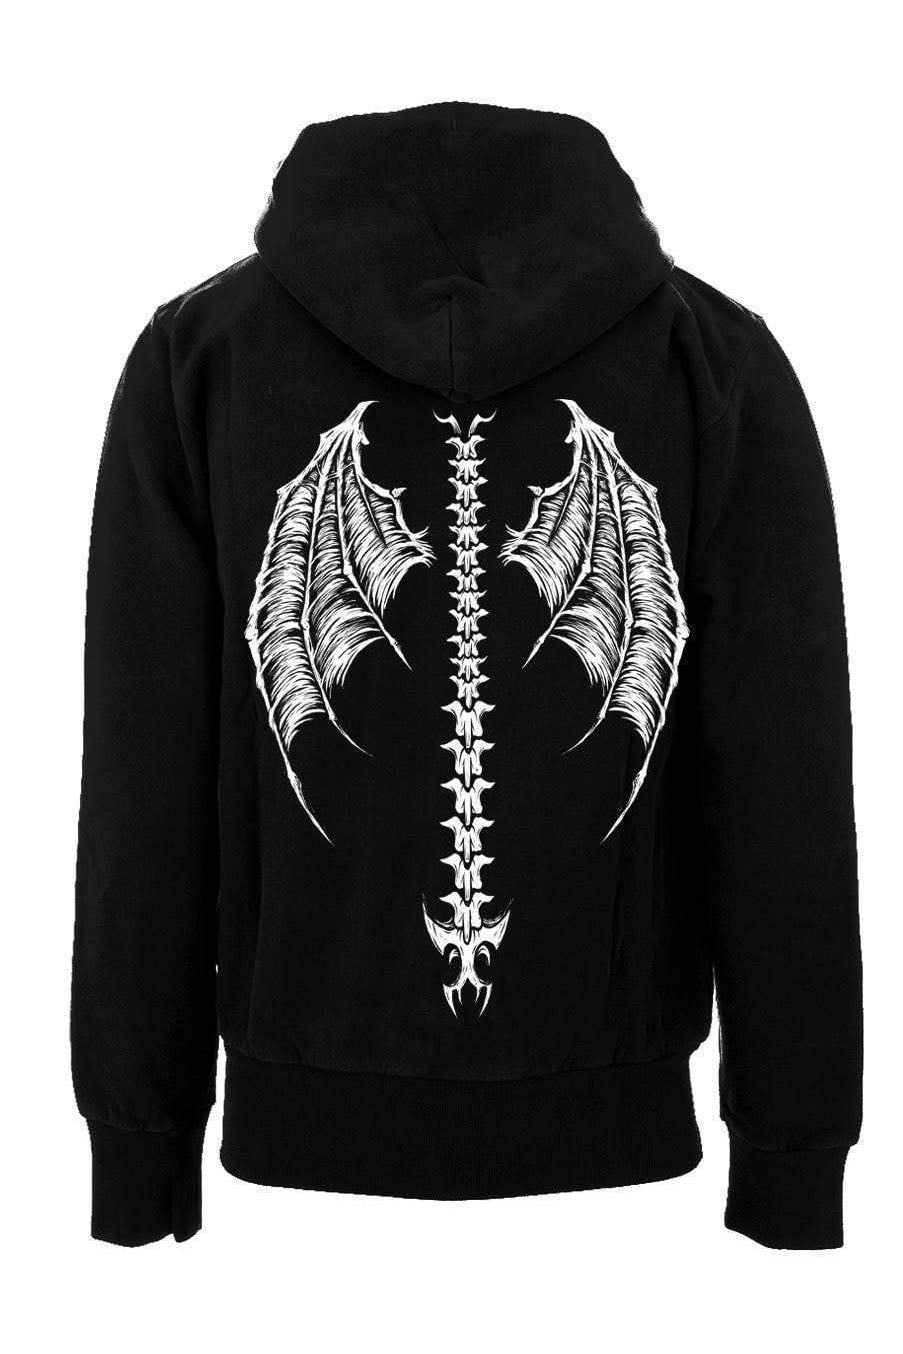 Demon Wings Hoodie [Zipper or Pullover] – VampireFreaks